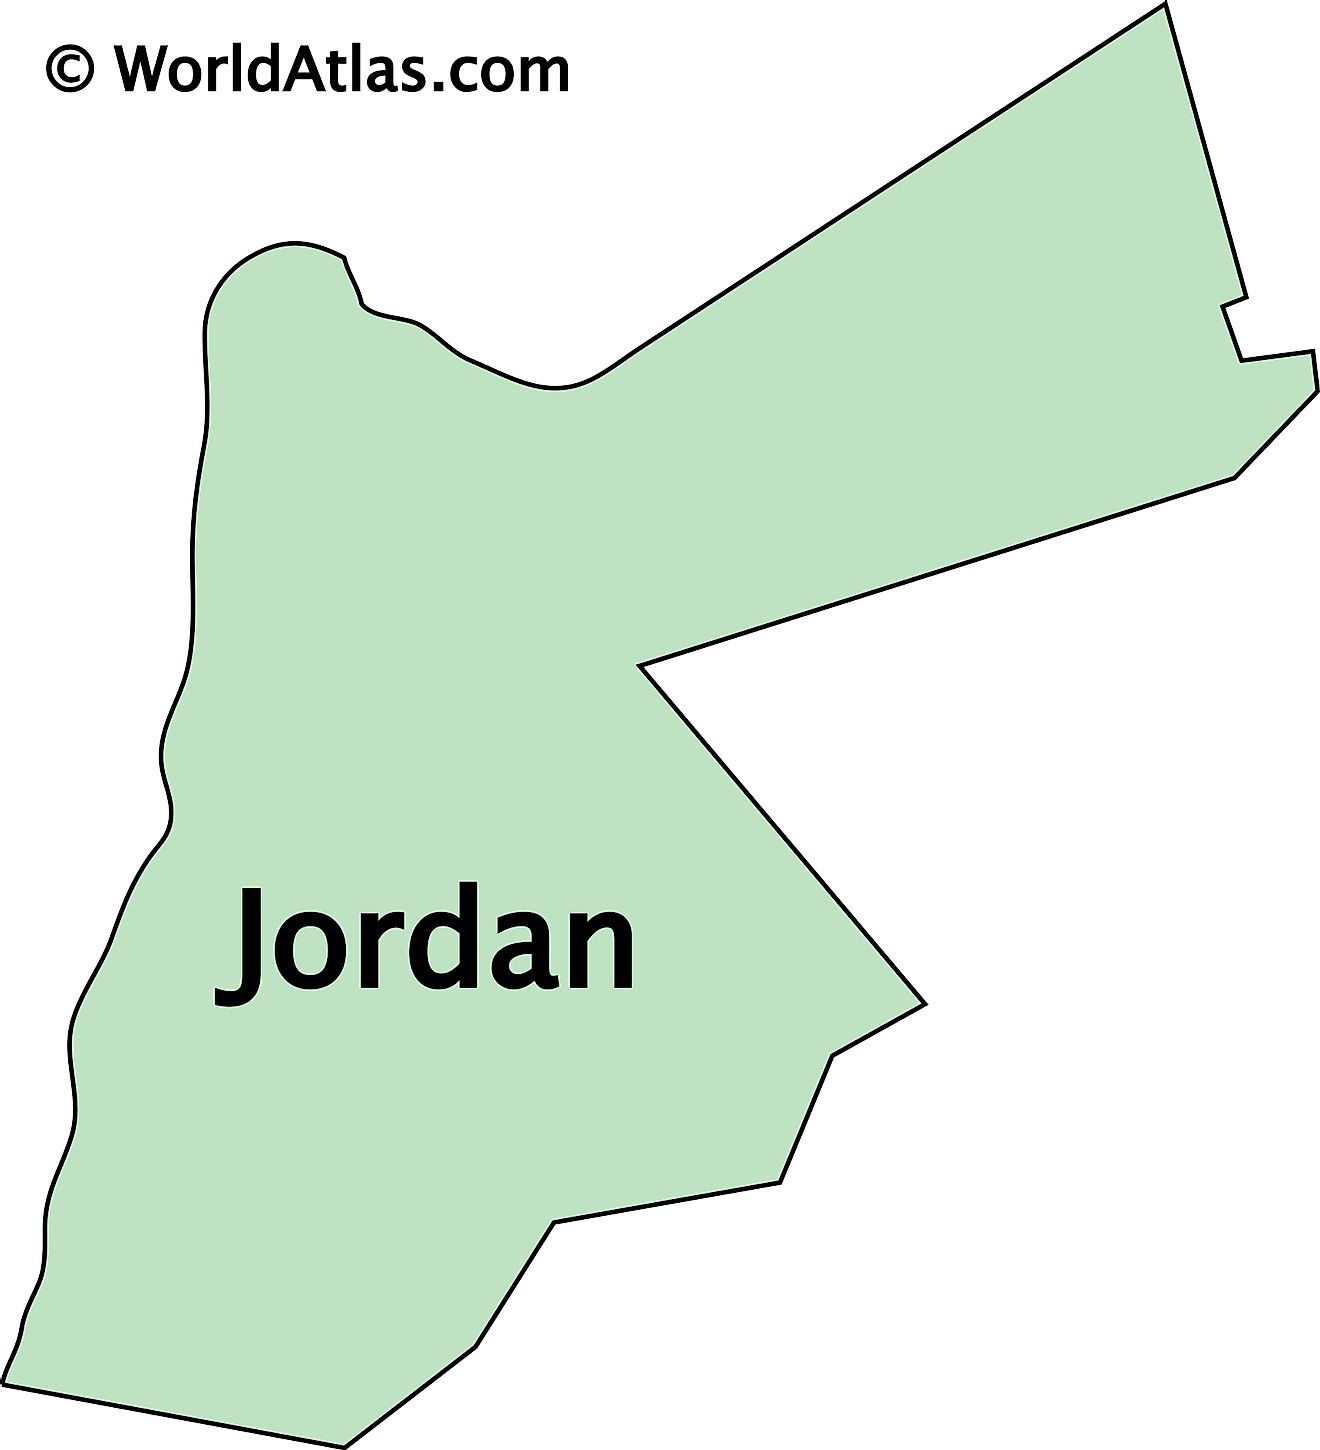 Mapa de contorno de Jordania